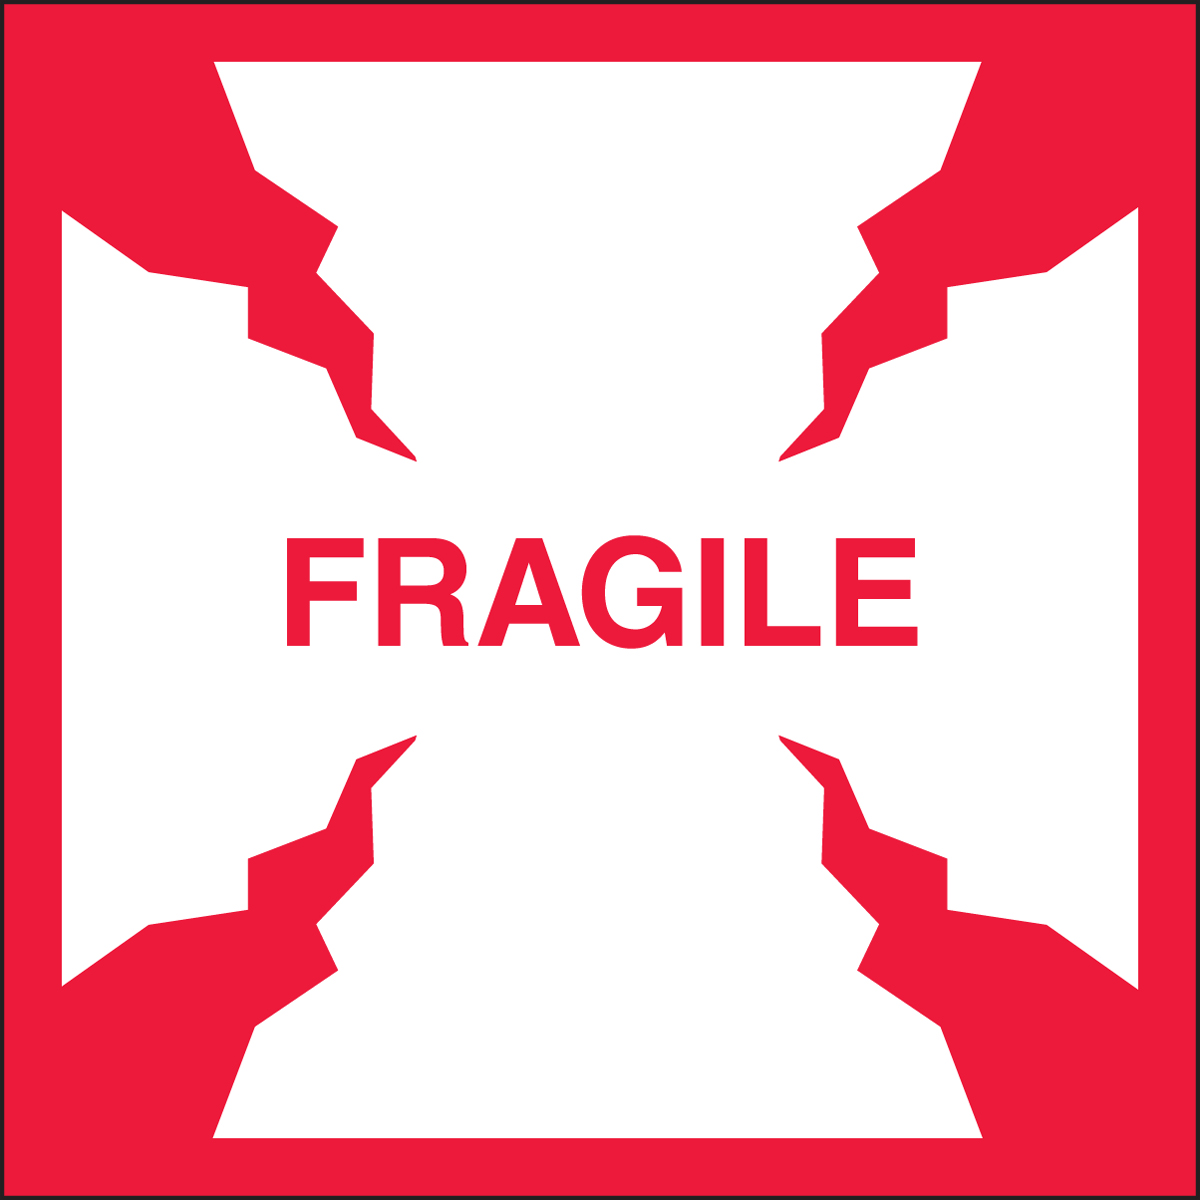 FRAGILE